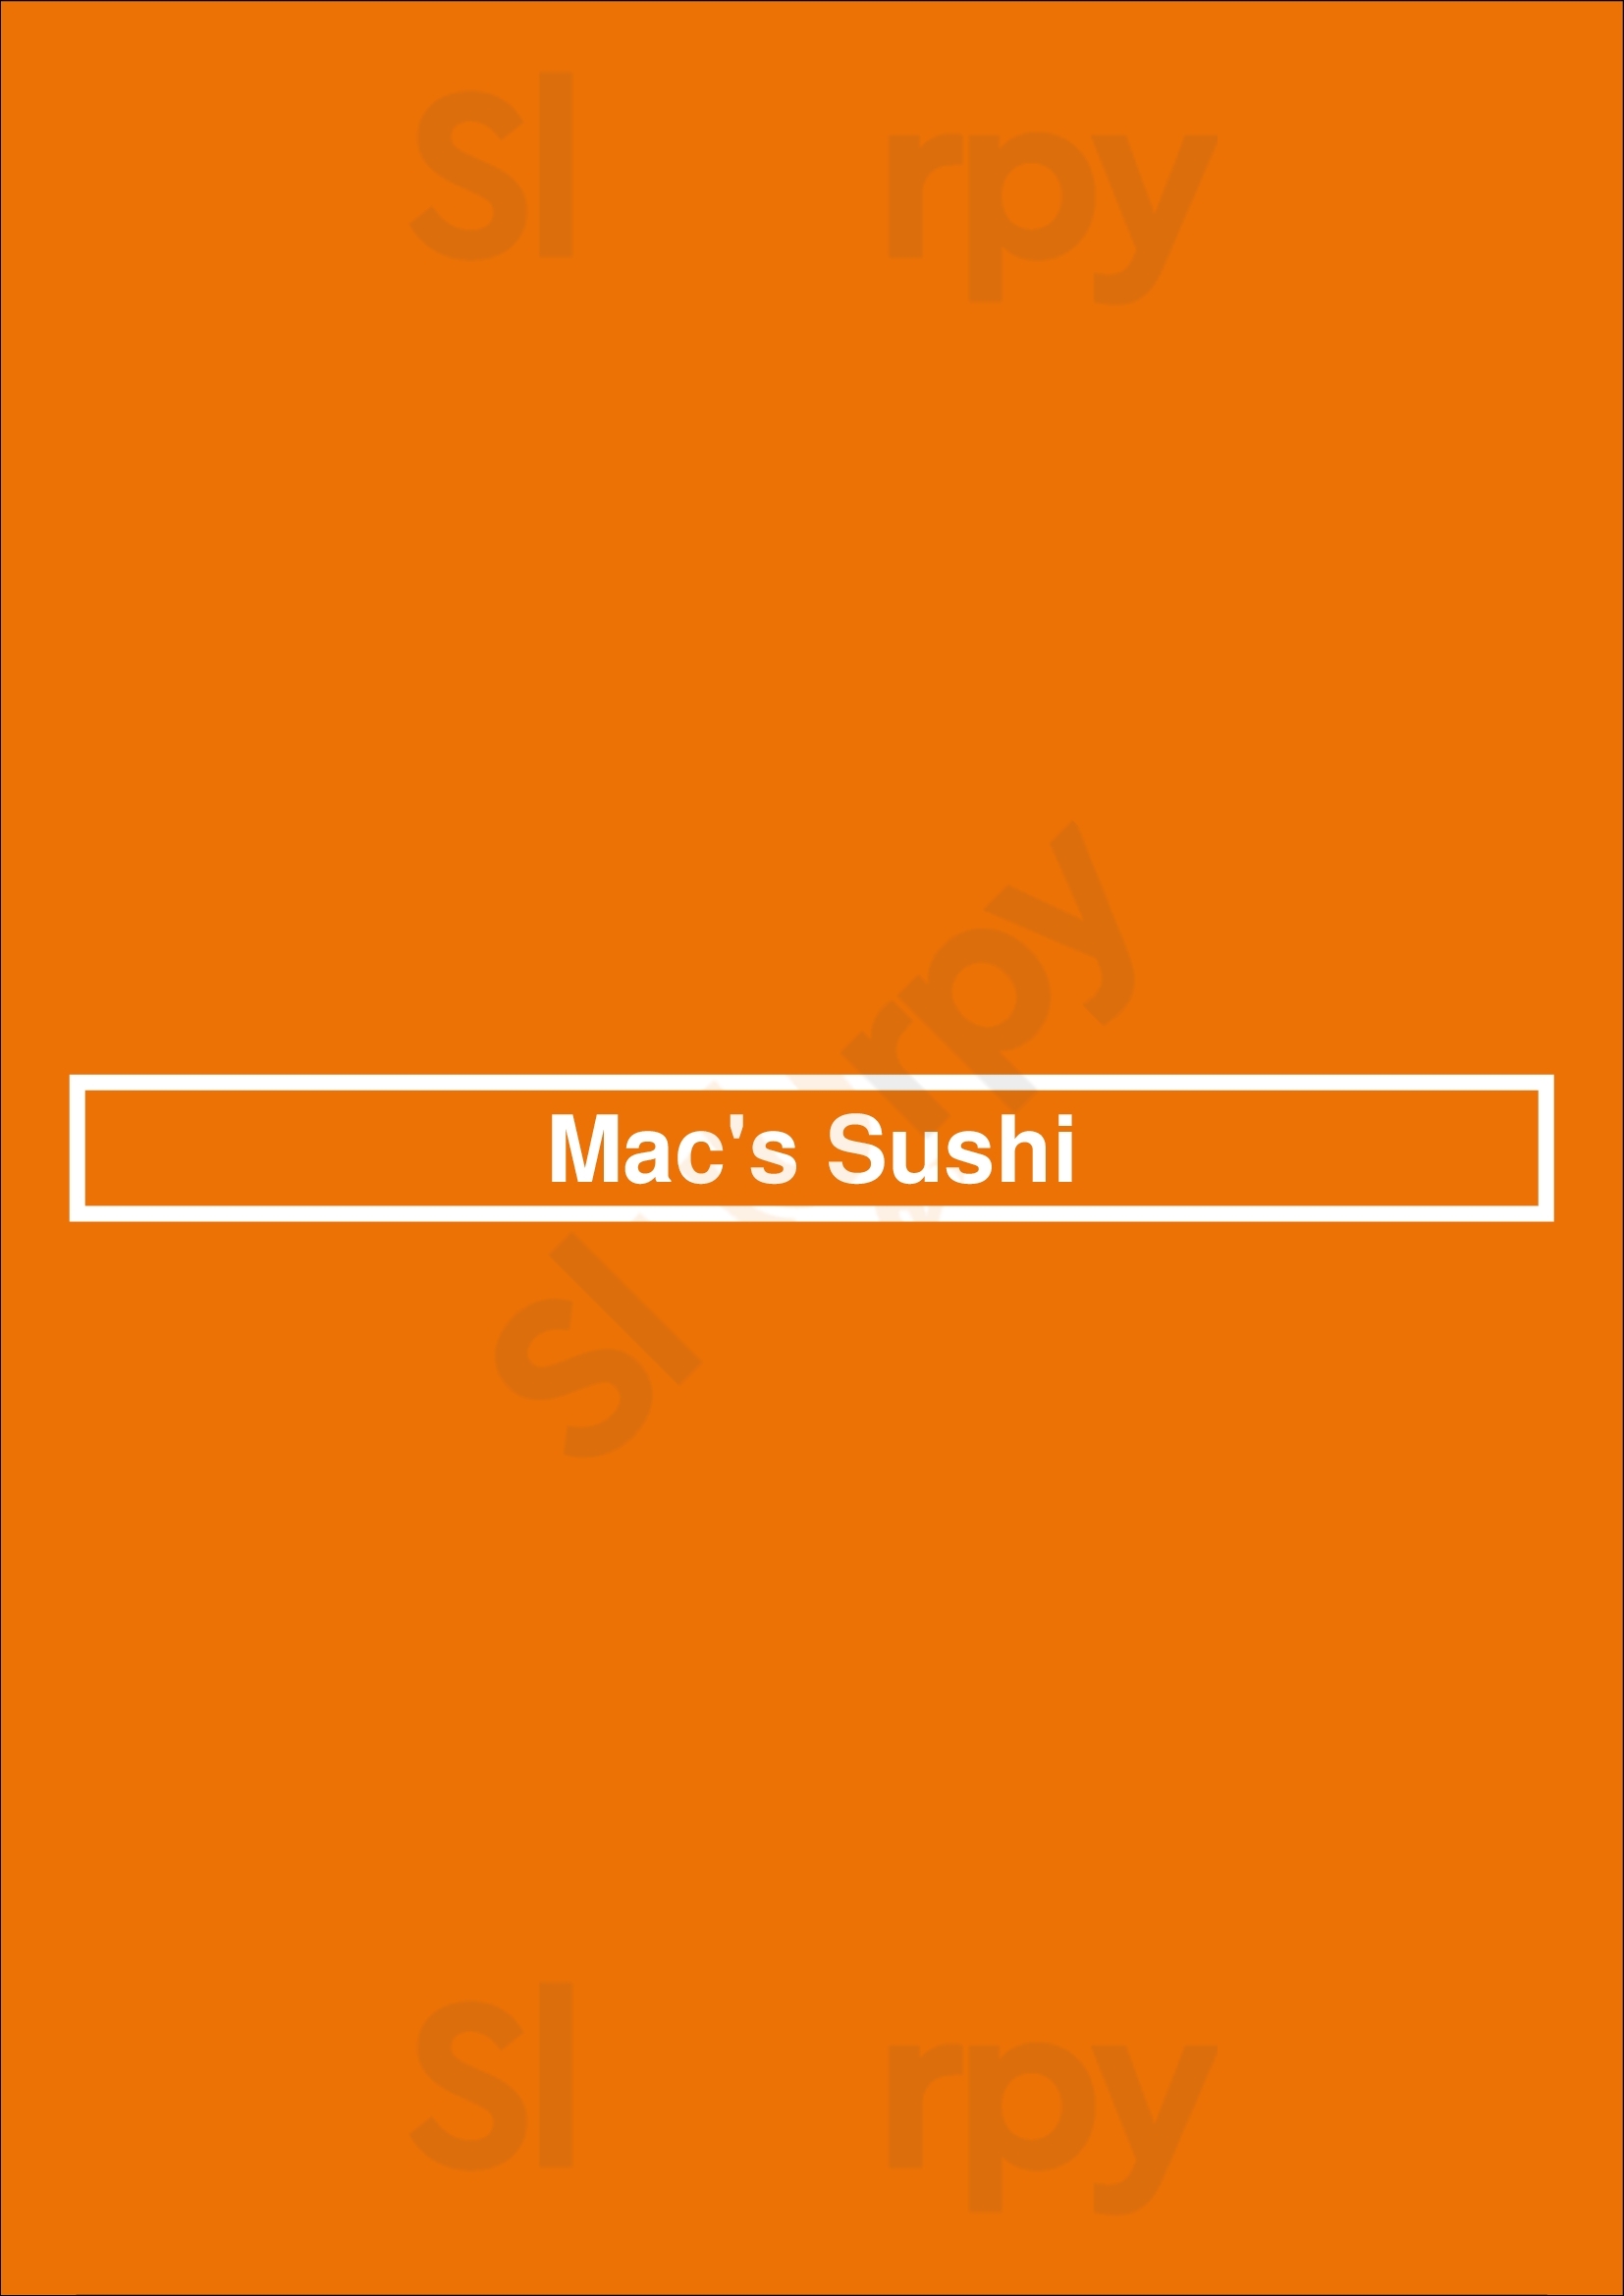 Mac's Sushi Toronto Menu - 1